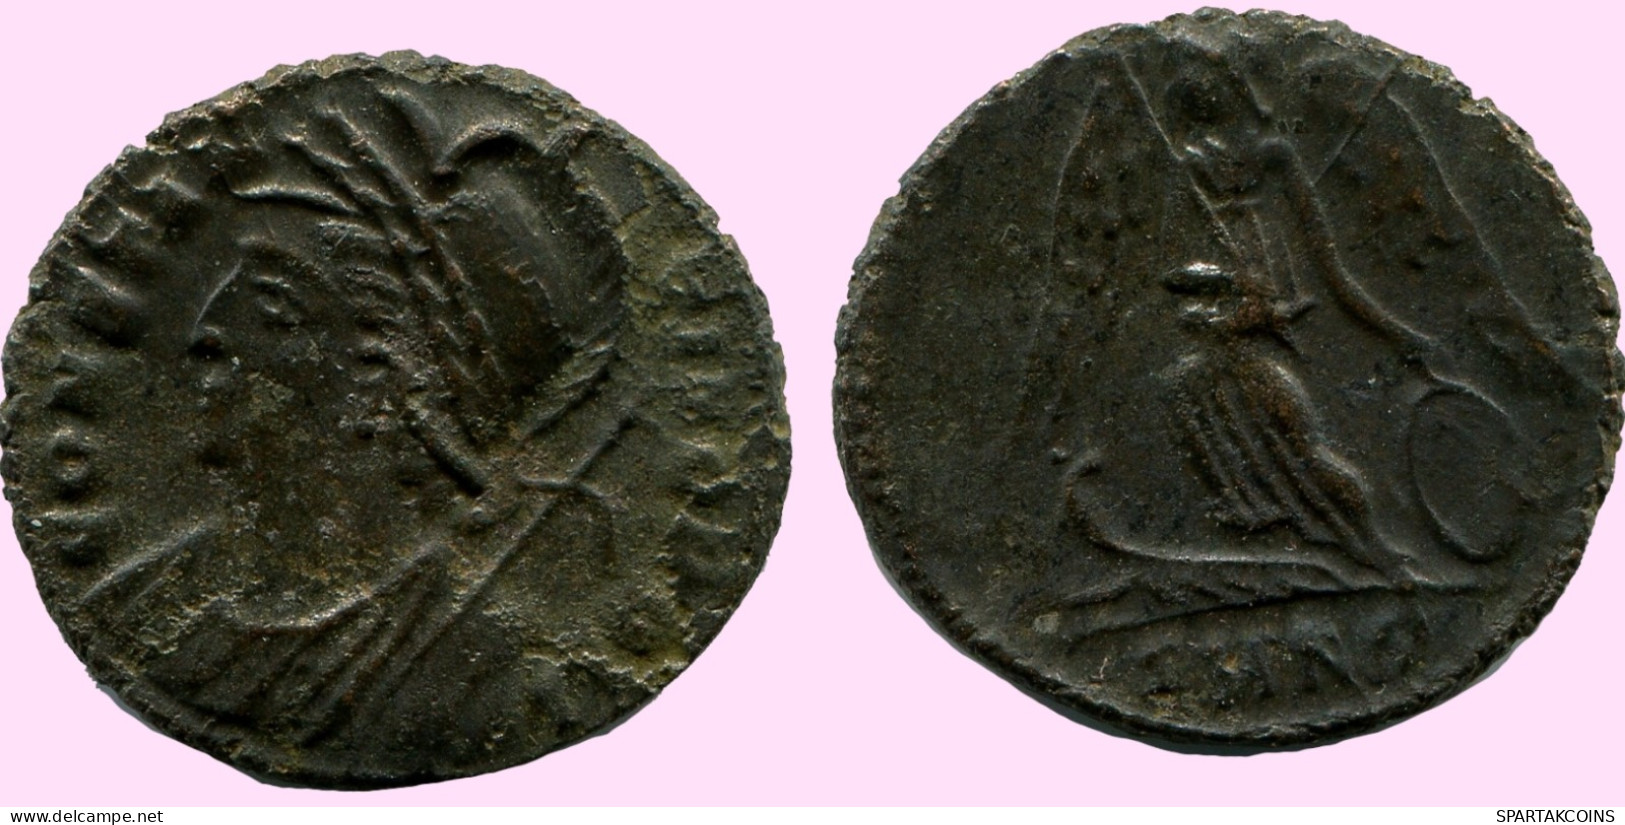 CONSTANTINUS I CONSTANTINOPOLI FOLLIS Ancient ROMAN Coin #ANC12083.25.U.A - L'Empire Chrétien (307 à 363)